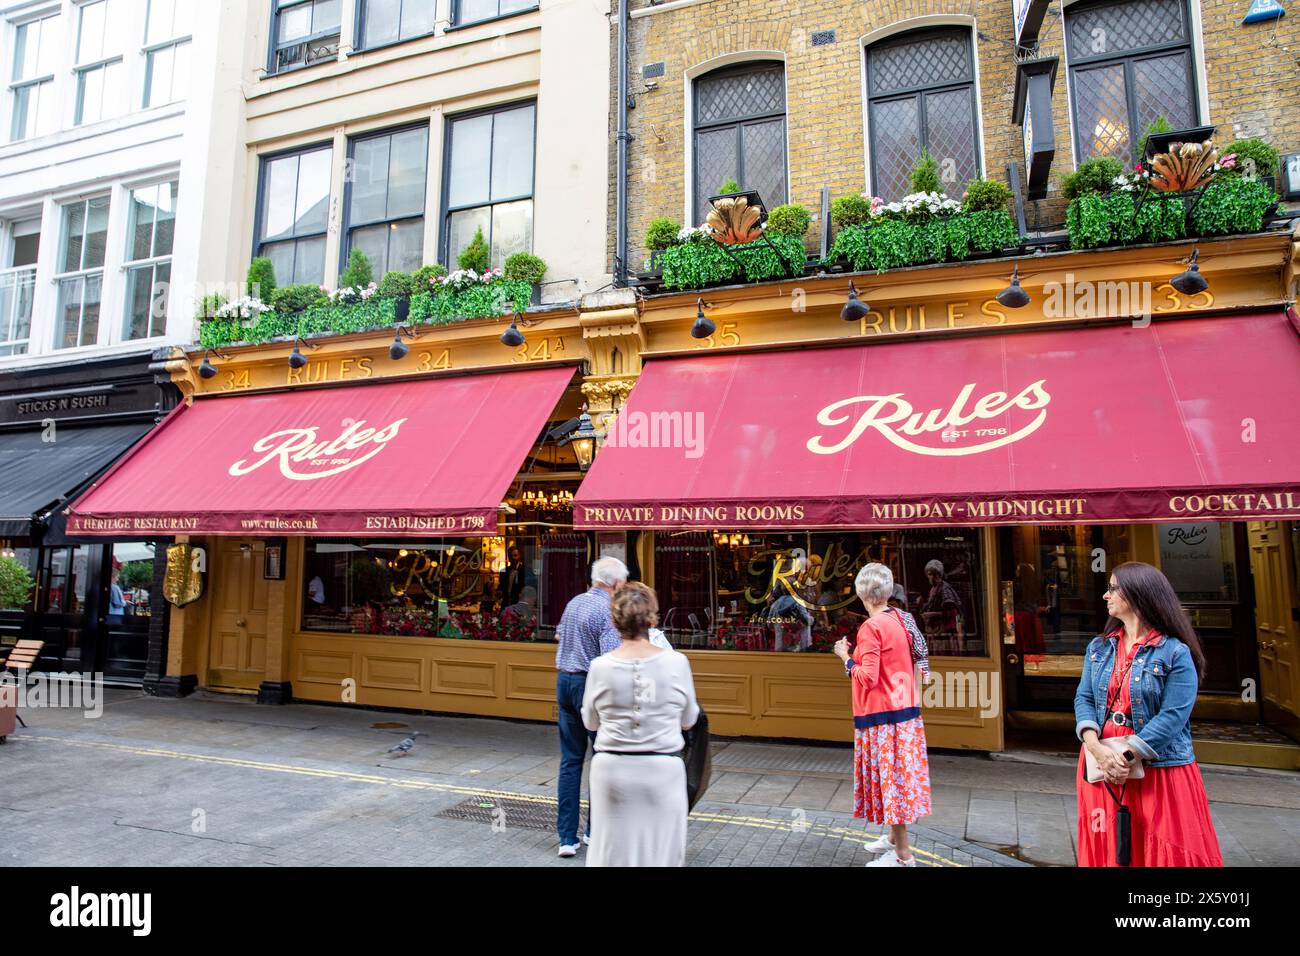 Rules Restaurant, gegründet 1798, in Covent Garden London, ältestes Restaurant in London, Außenaufnahme mit roter Markise, England, UK, 2023 Stockfoto